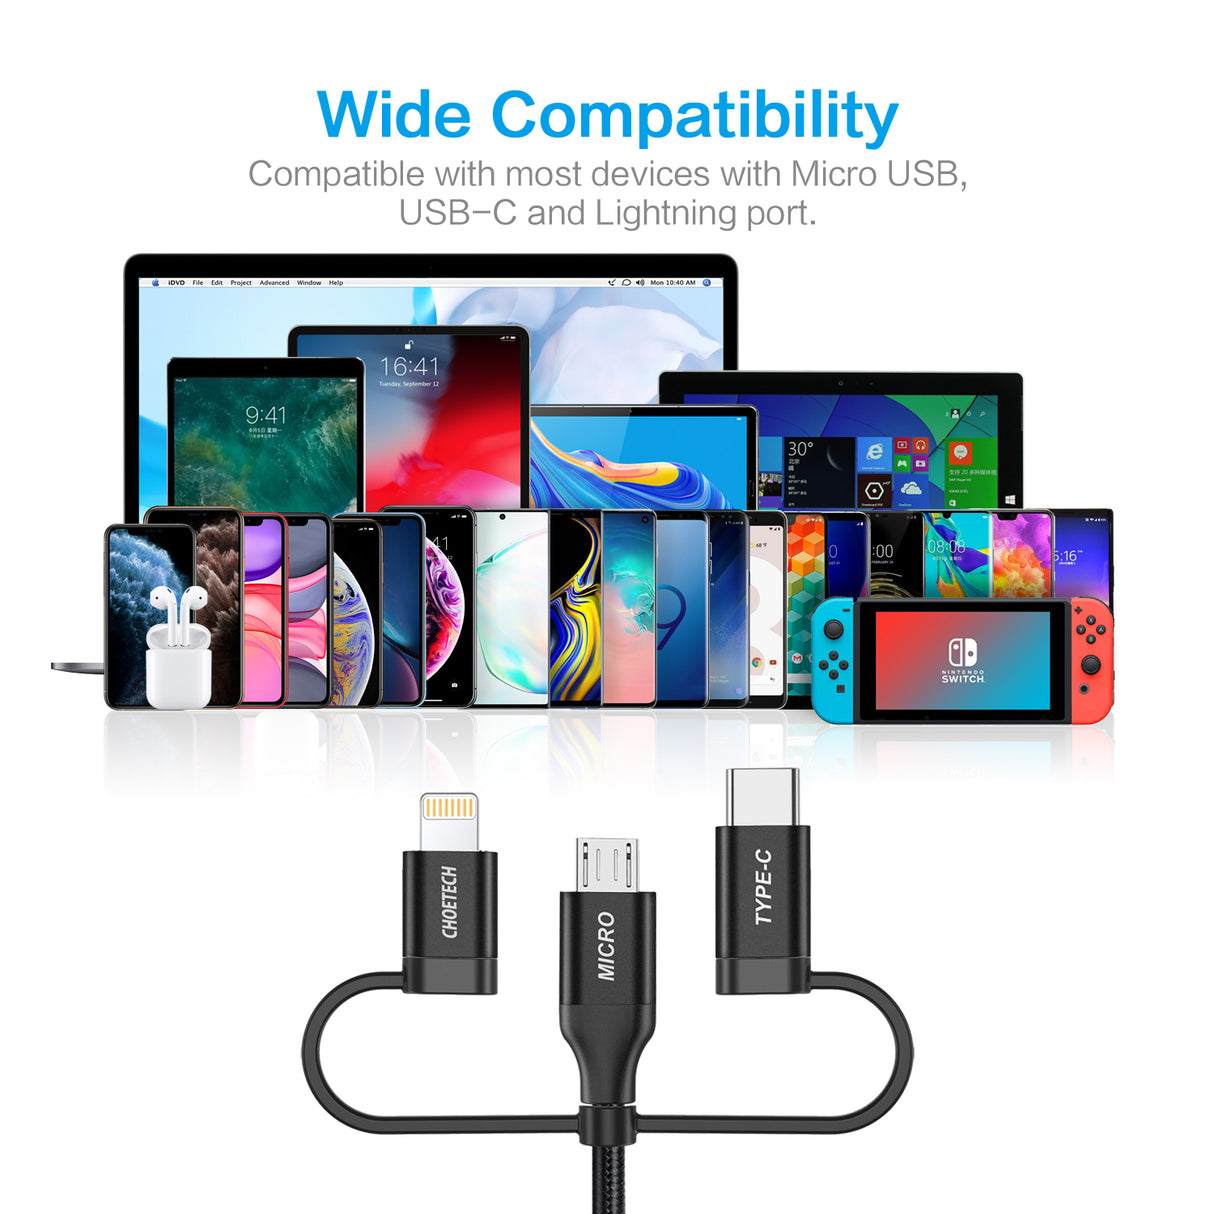 IP0030 Multi-USB-Kabel, CHOETECH 3-in-1-Geflechtkabel mit Lightning-/Typ-C-/Micro-USB-Anschluss, [MFi-zertifiziert] Lade- und Synchronisierungskabel für iPhone, iPad, Galaxy und weitere iOS- und Android-Geräte